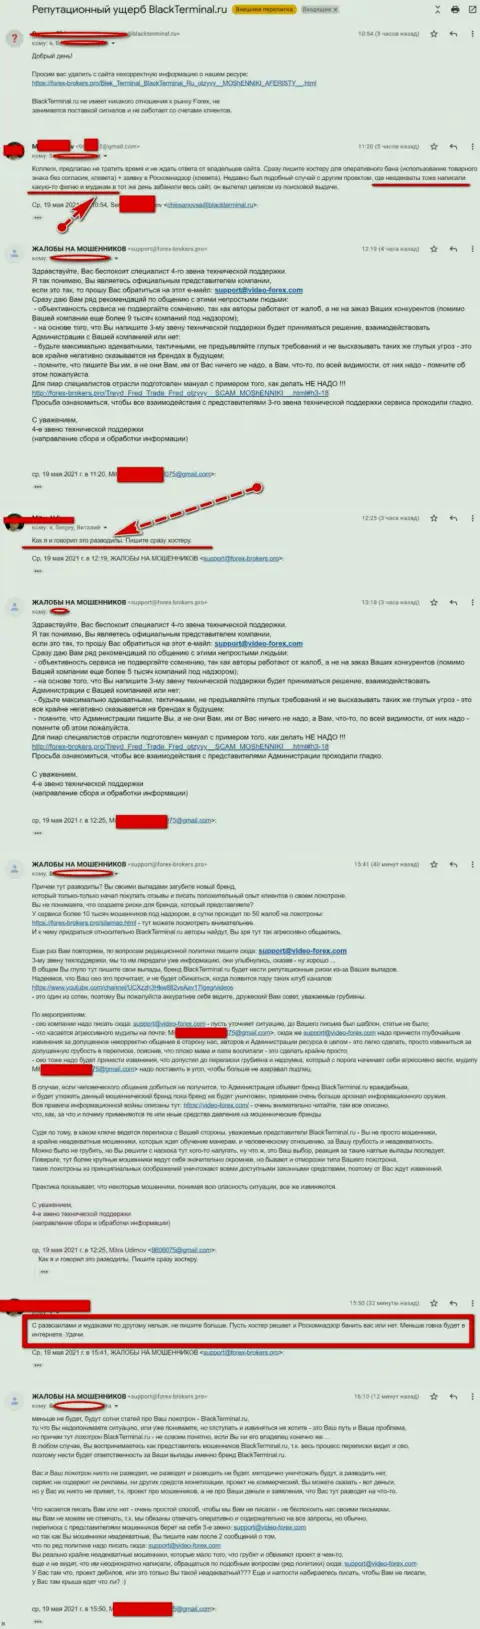 Переписка Администрации сайта, с отзывами о BlackTerminal, с представителями указанного незаконно действующего онлайн-сервиса